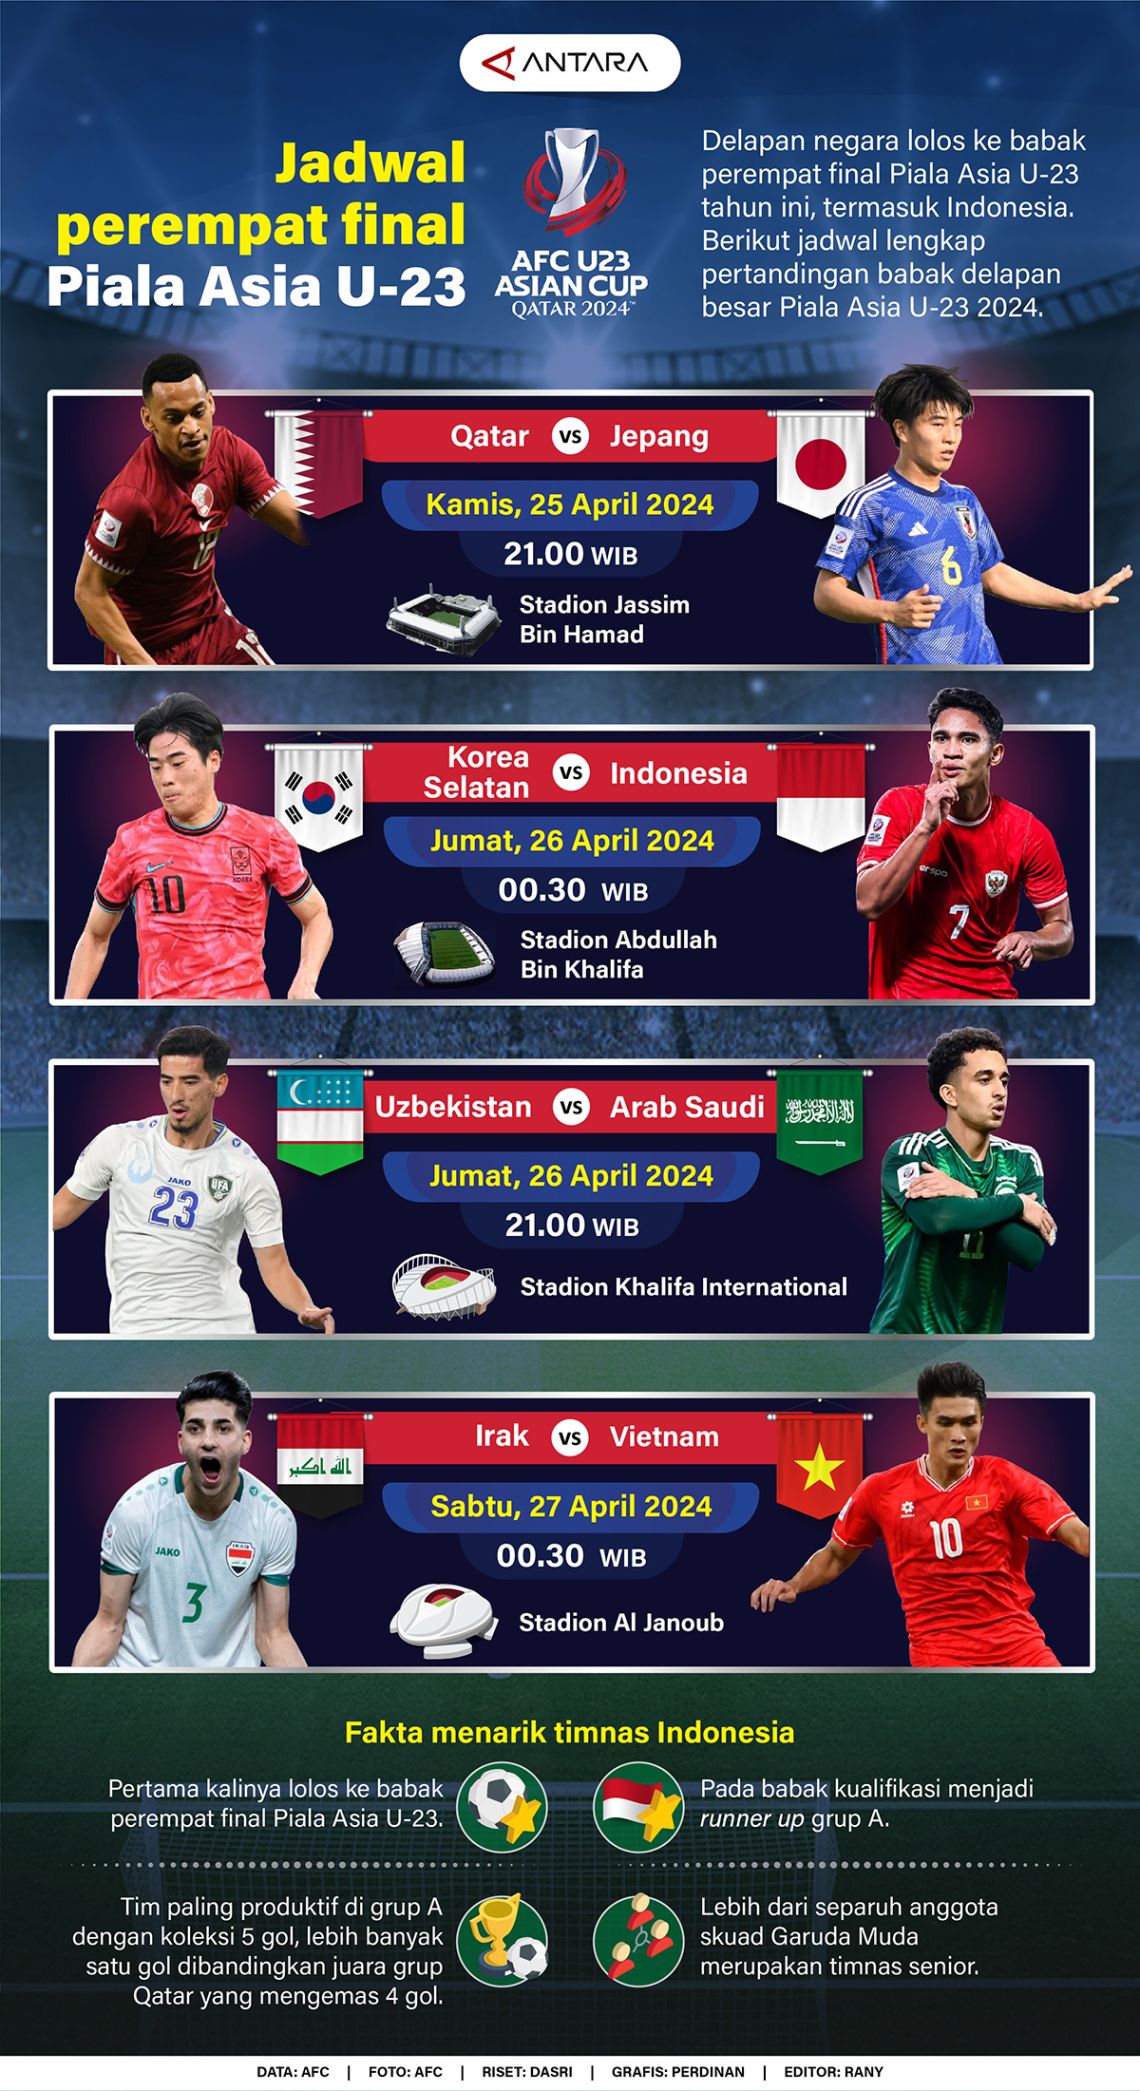 Jadwal perempat final Piala Asia U-23